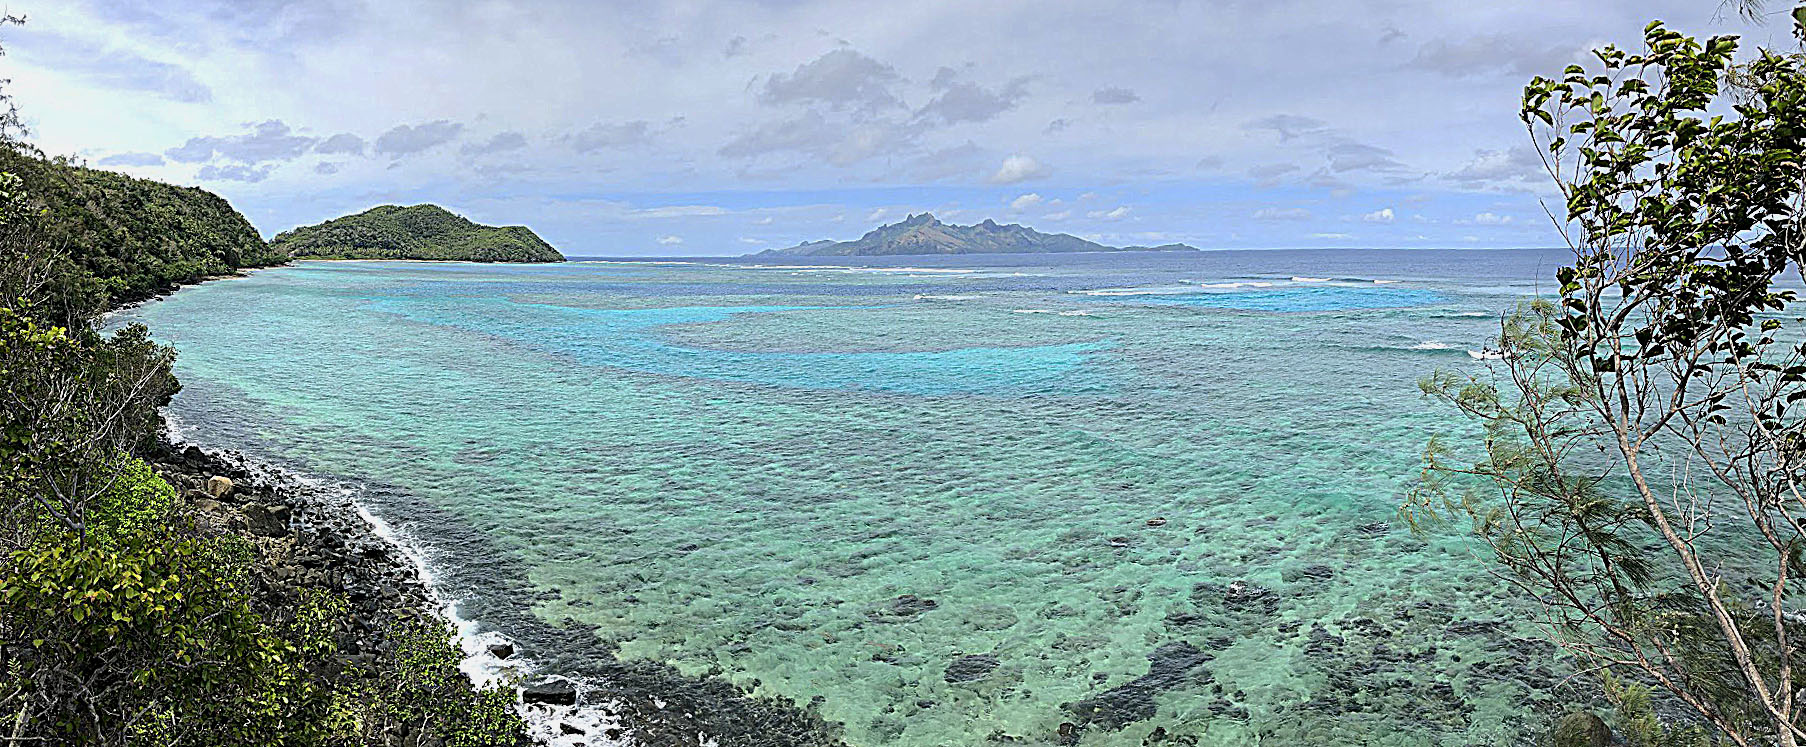 Yasawa Islands - Fiji